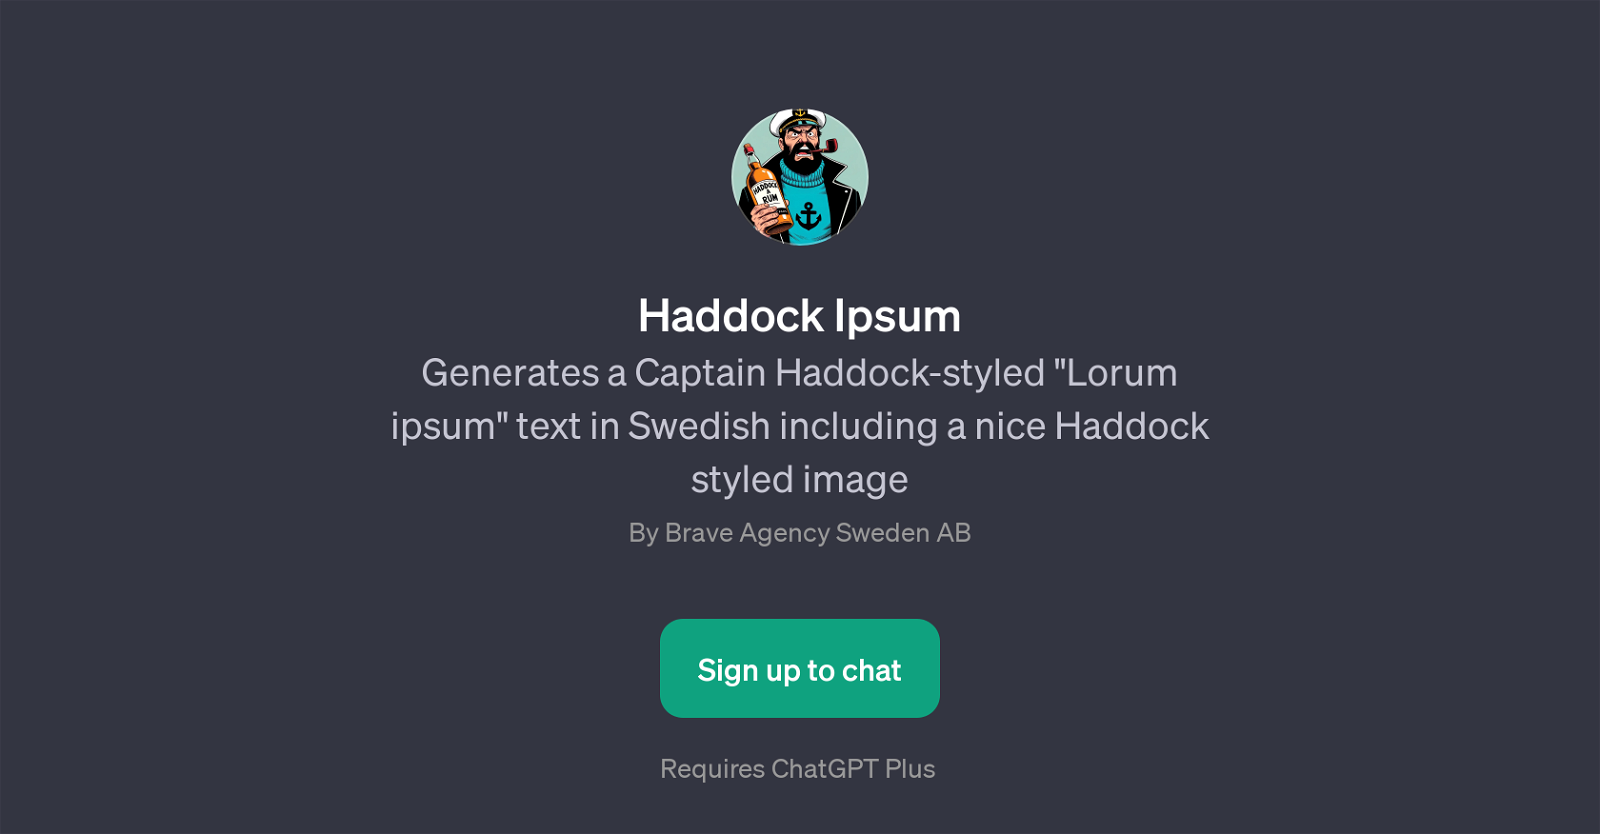 Haddock Ipsum website